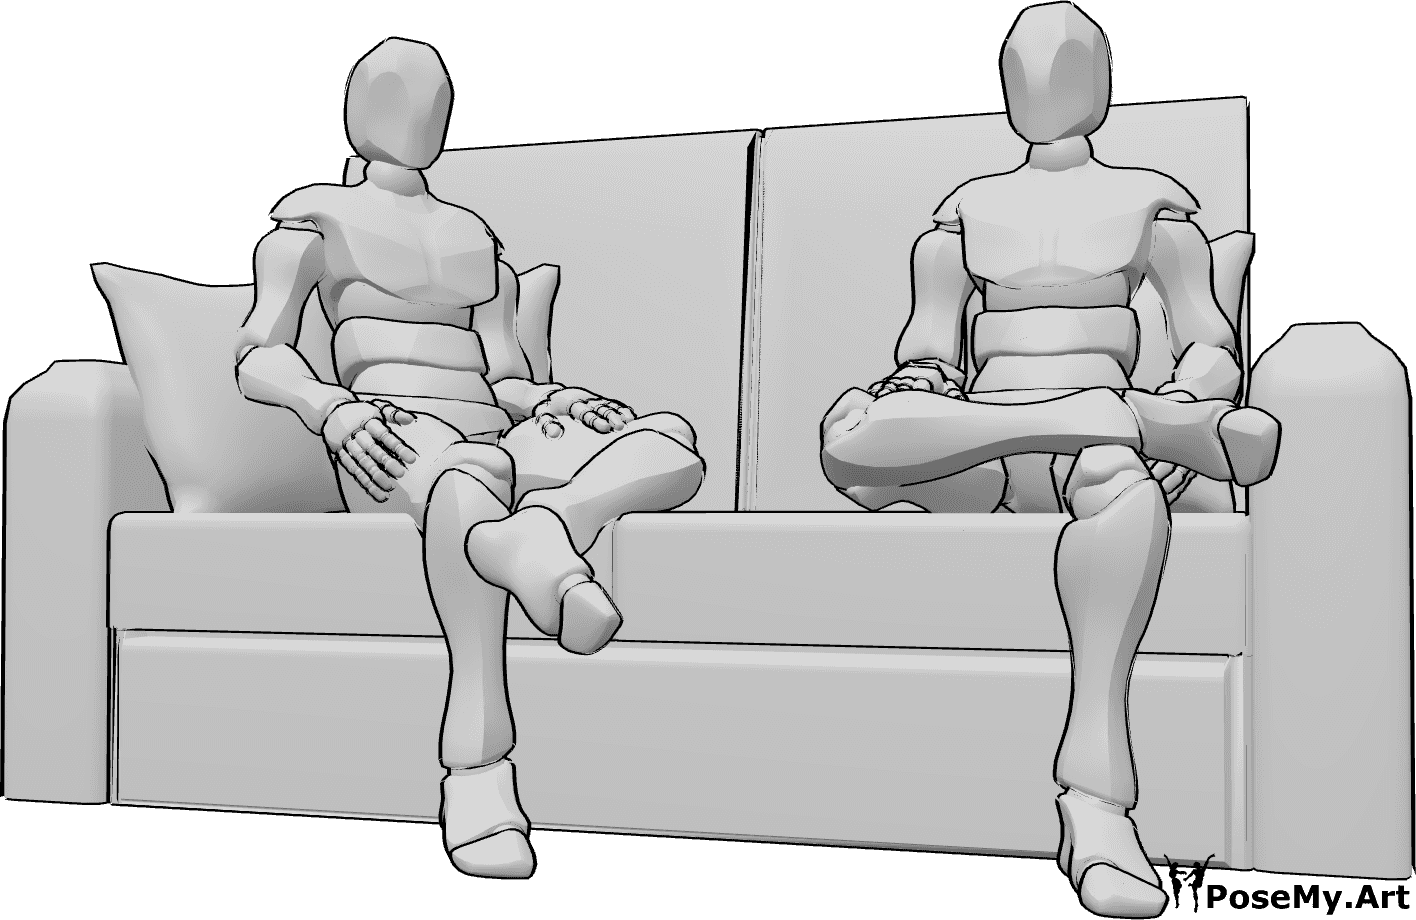 Riferimento alle pose- Maschi in posizione seduta - Due uomini sono seduti sul divano con disinvoltura e guardano avanti.